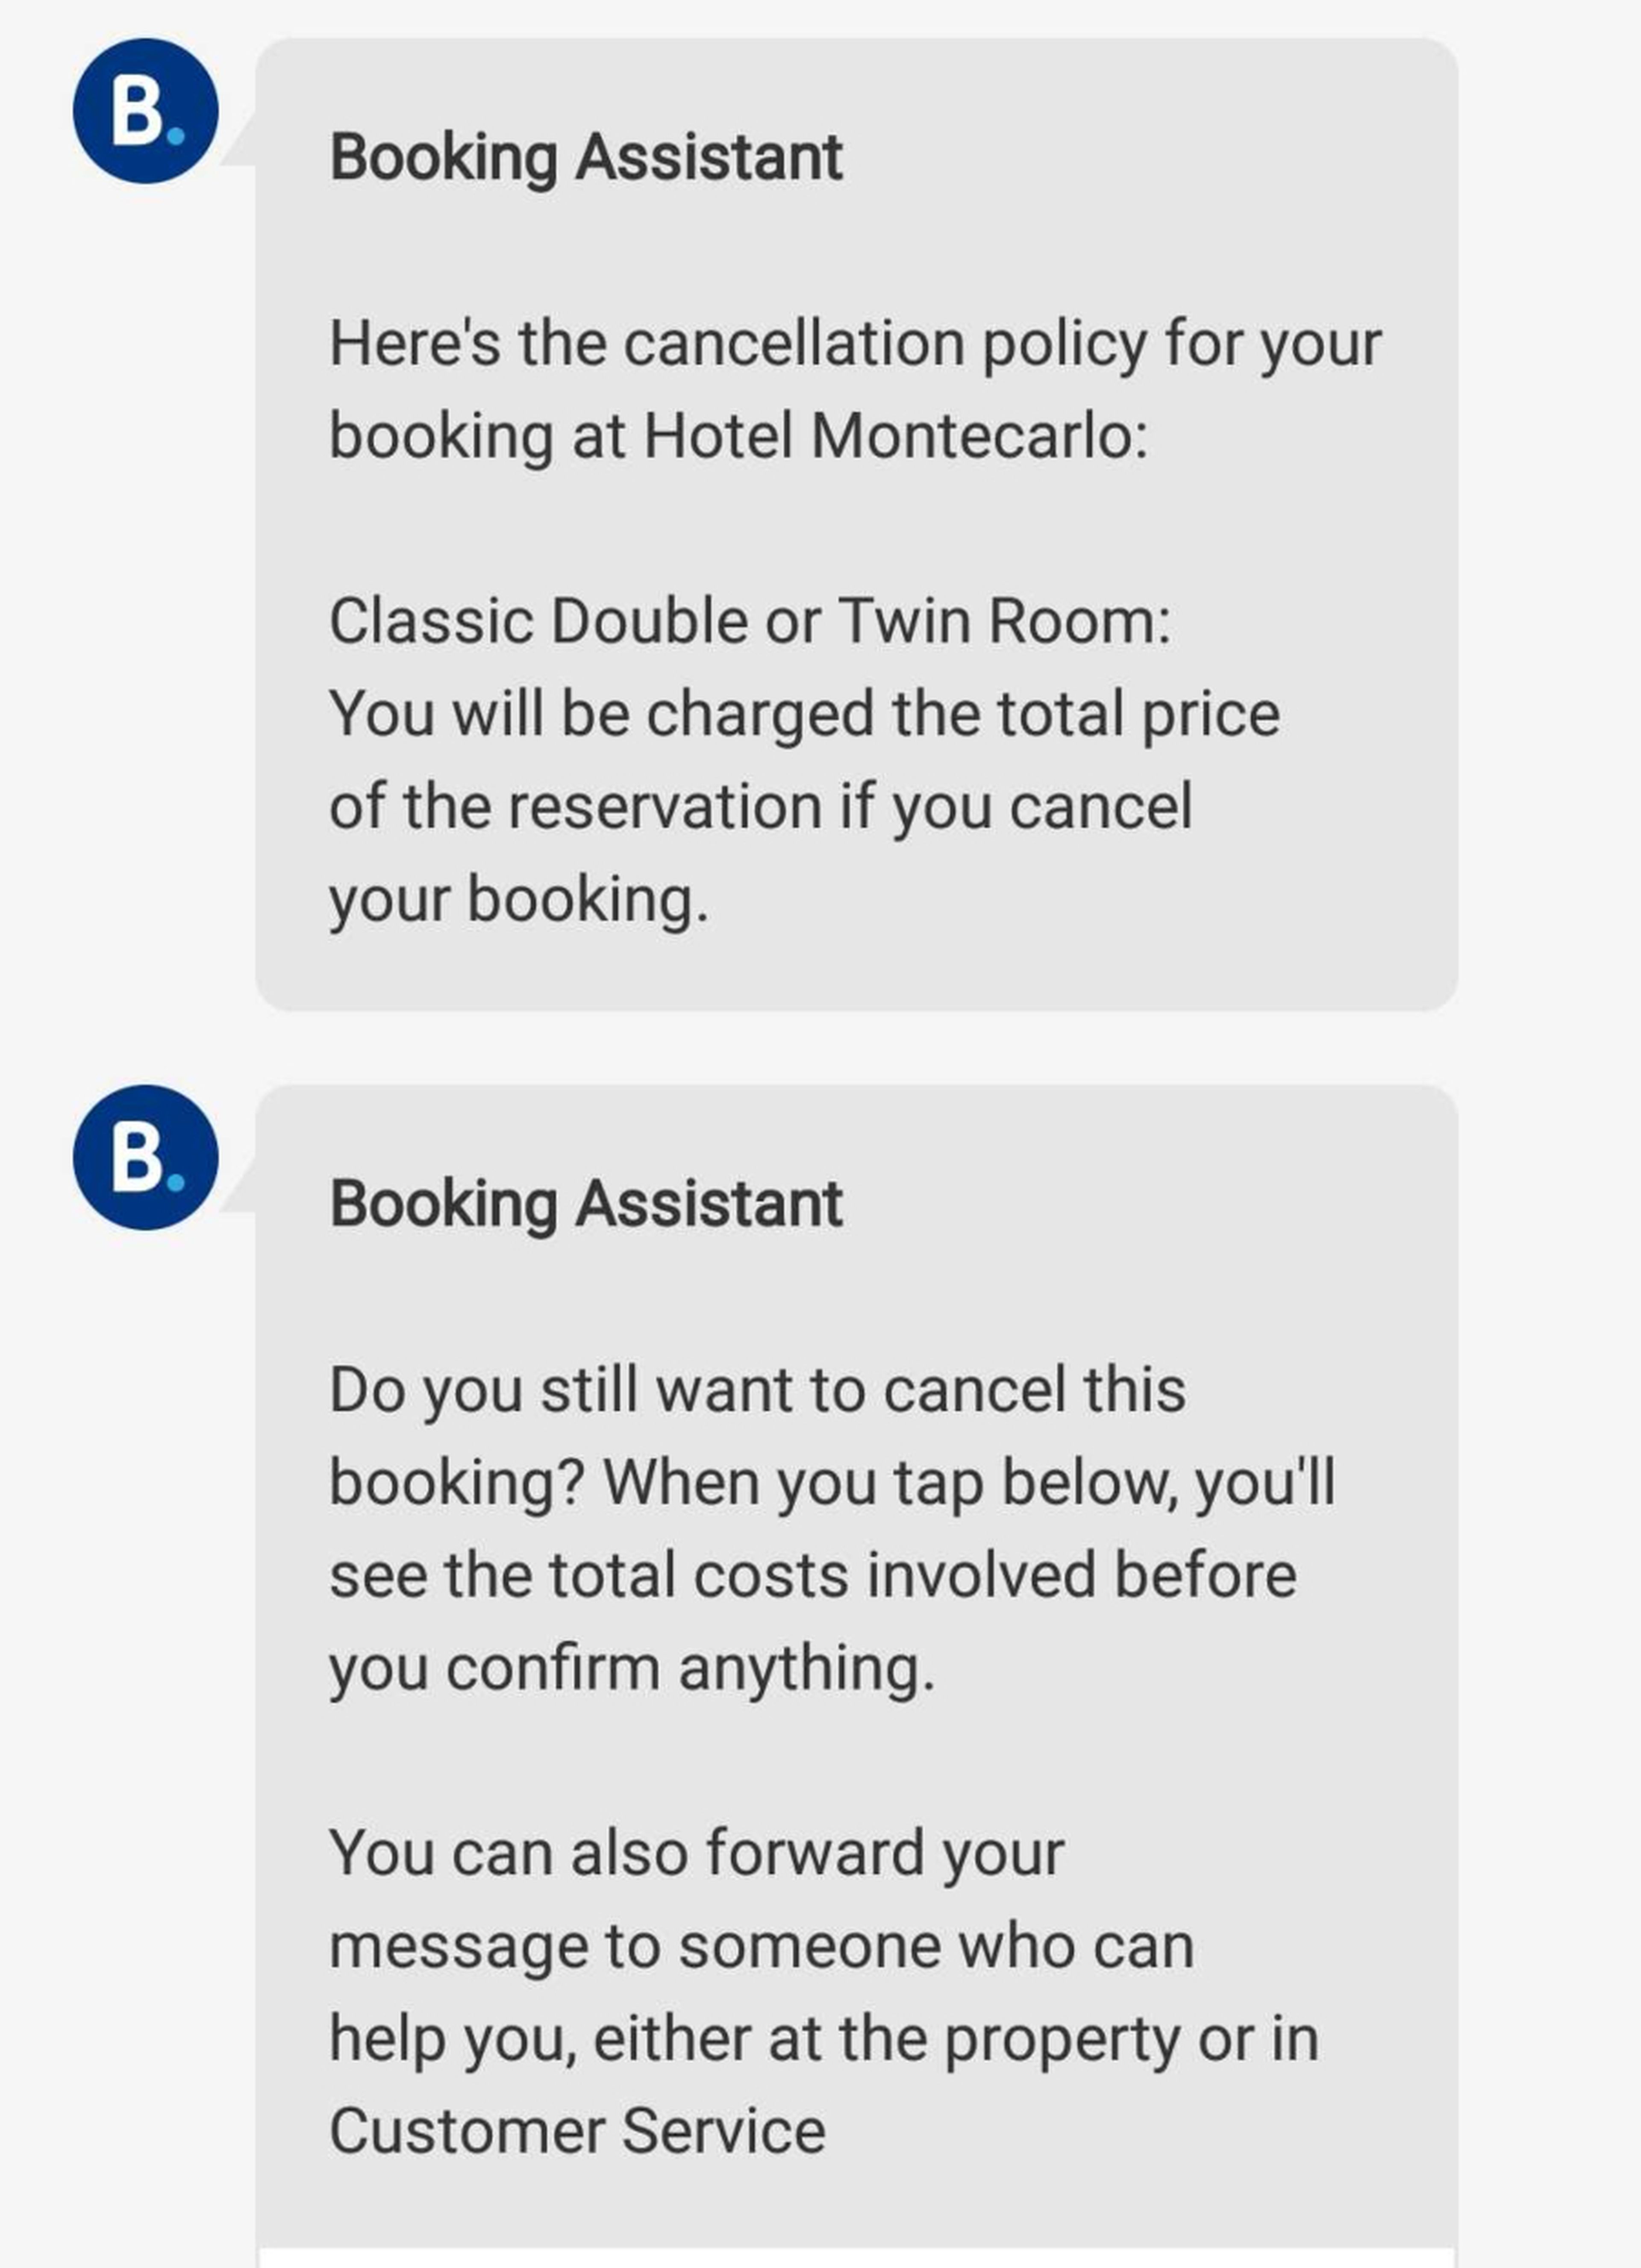 Mensaje de Booking sobre la política de cancelaciones del hotel